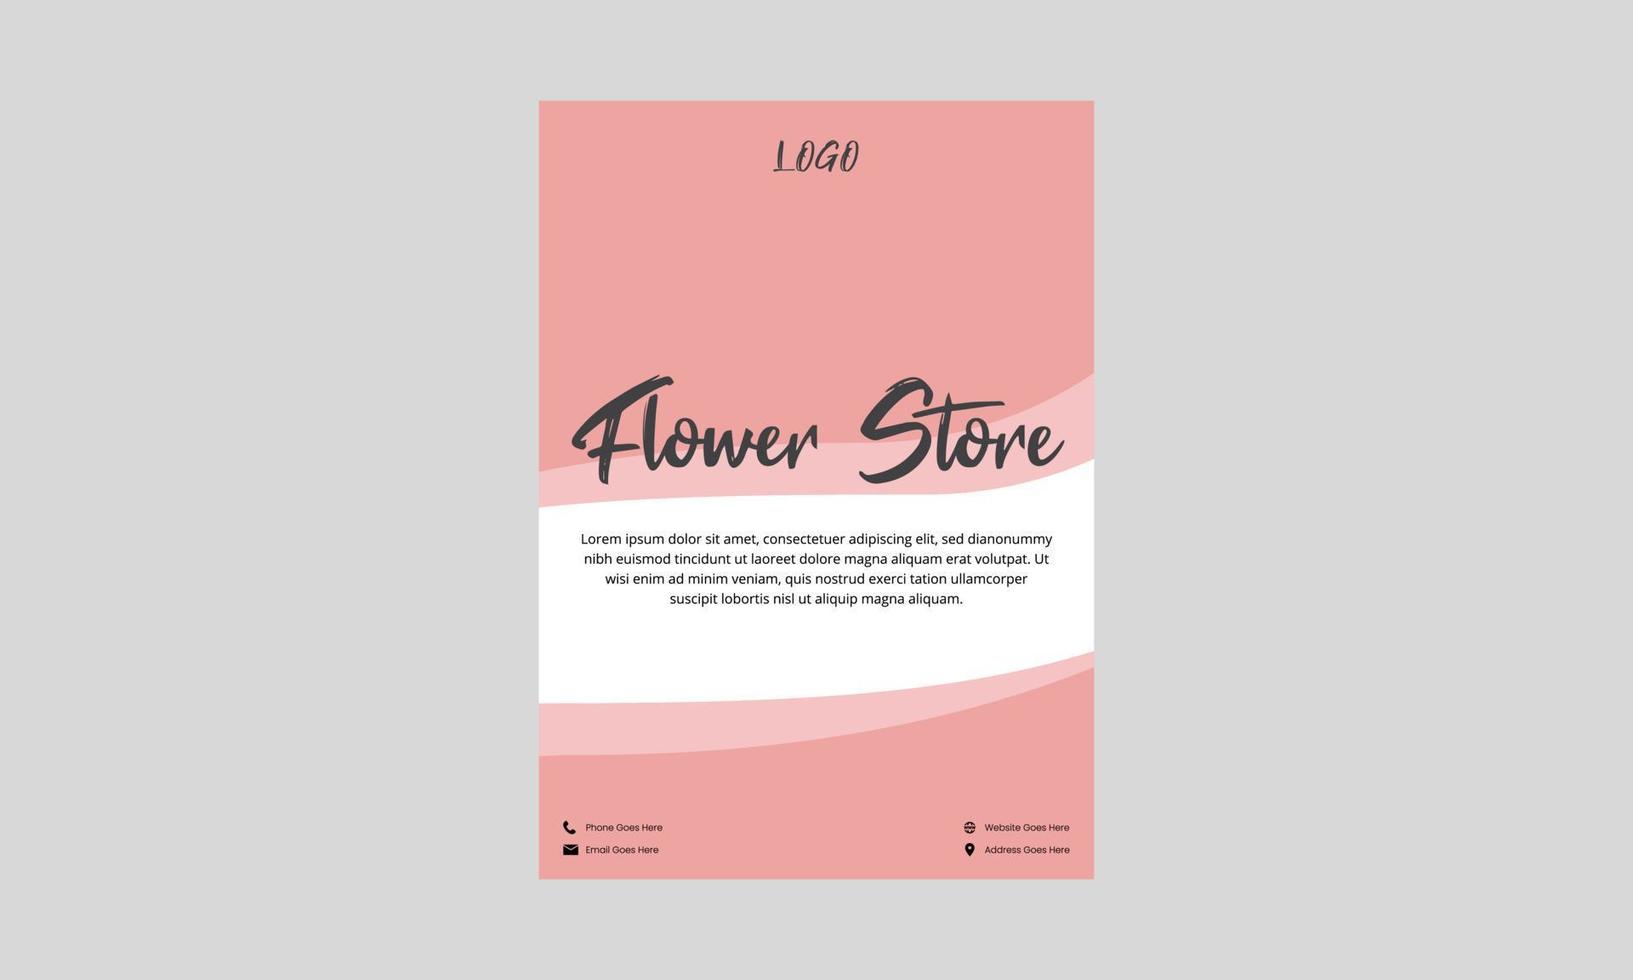 blomsteraffär flygblad design. blomma försäljning butik affisch broschyr i rosa färg. blomstersäljare butik flyer, dl flyer design vektor